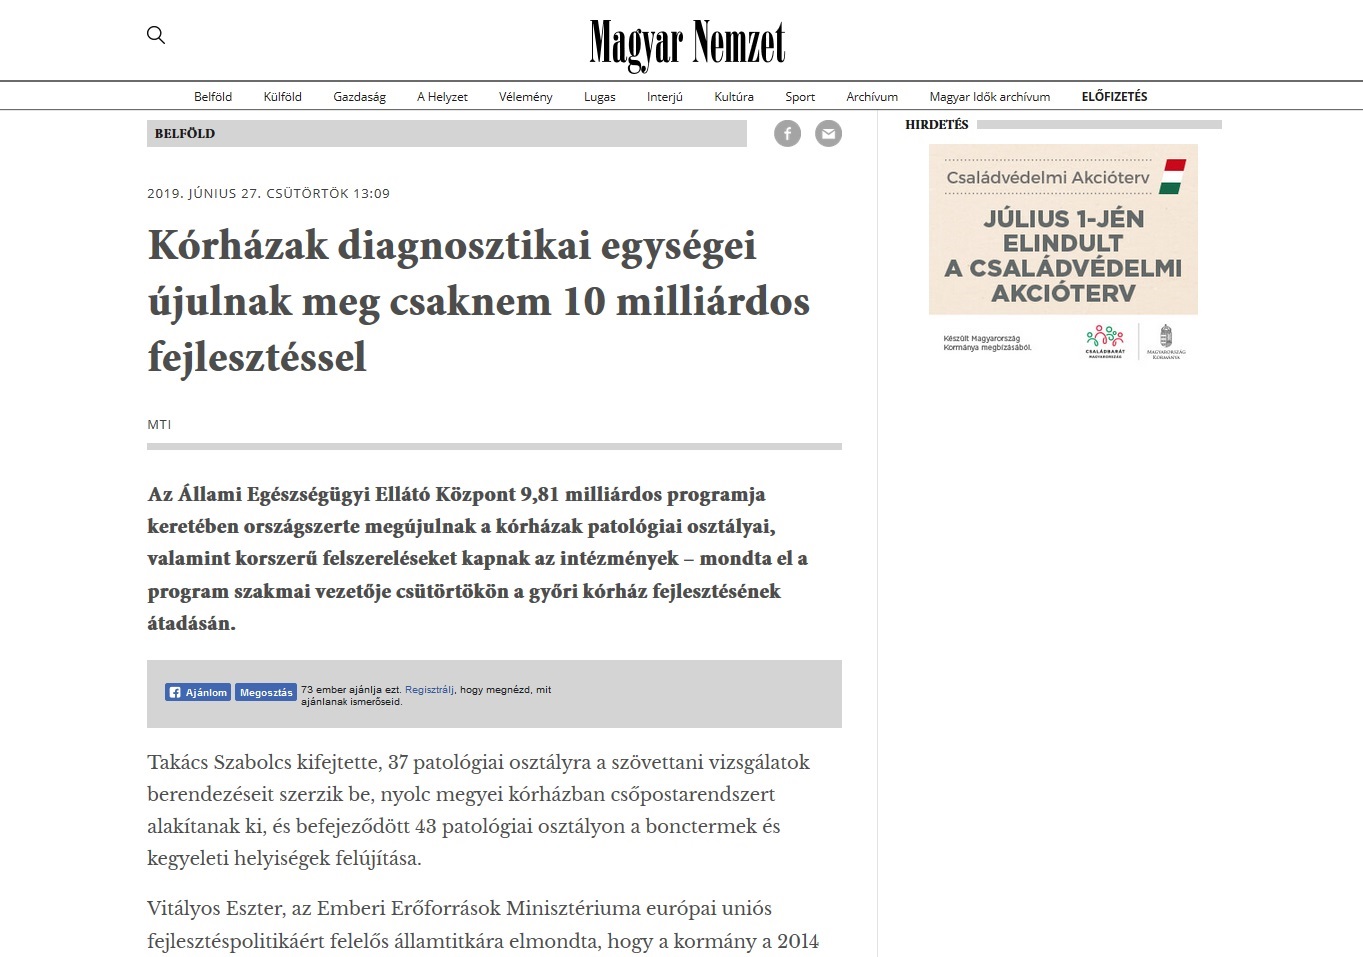 Magyar Nemzet online